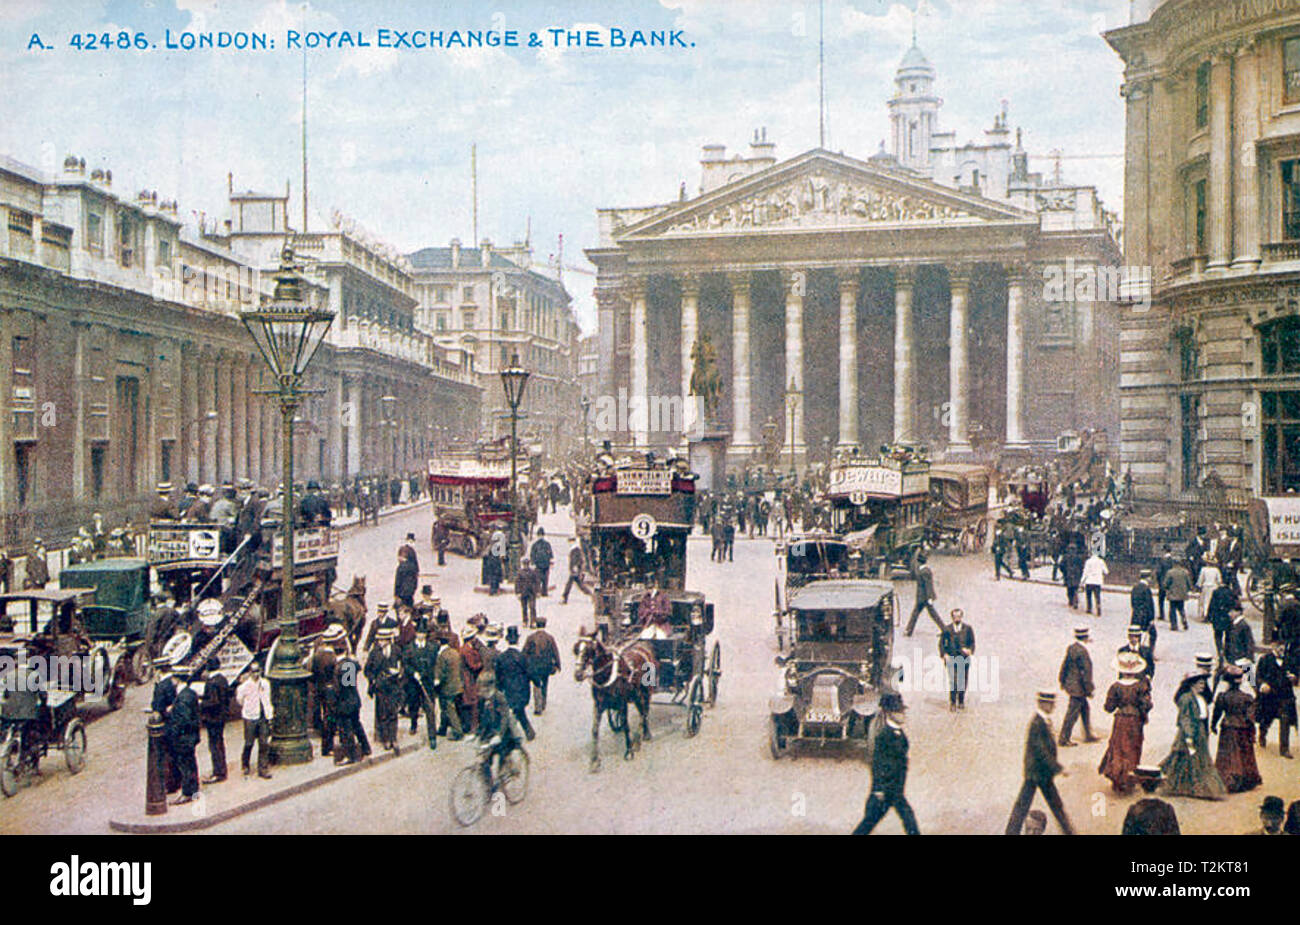 Banque d'Angleterre à gauche et le Royal Exchange, Londres, vers 1905 Banque D'Images